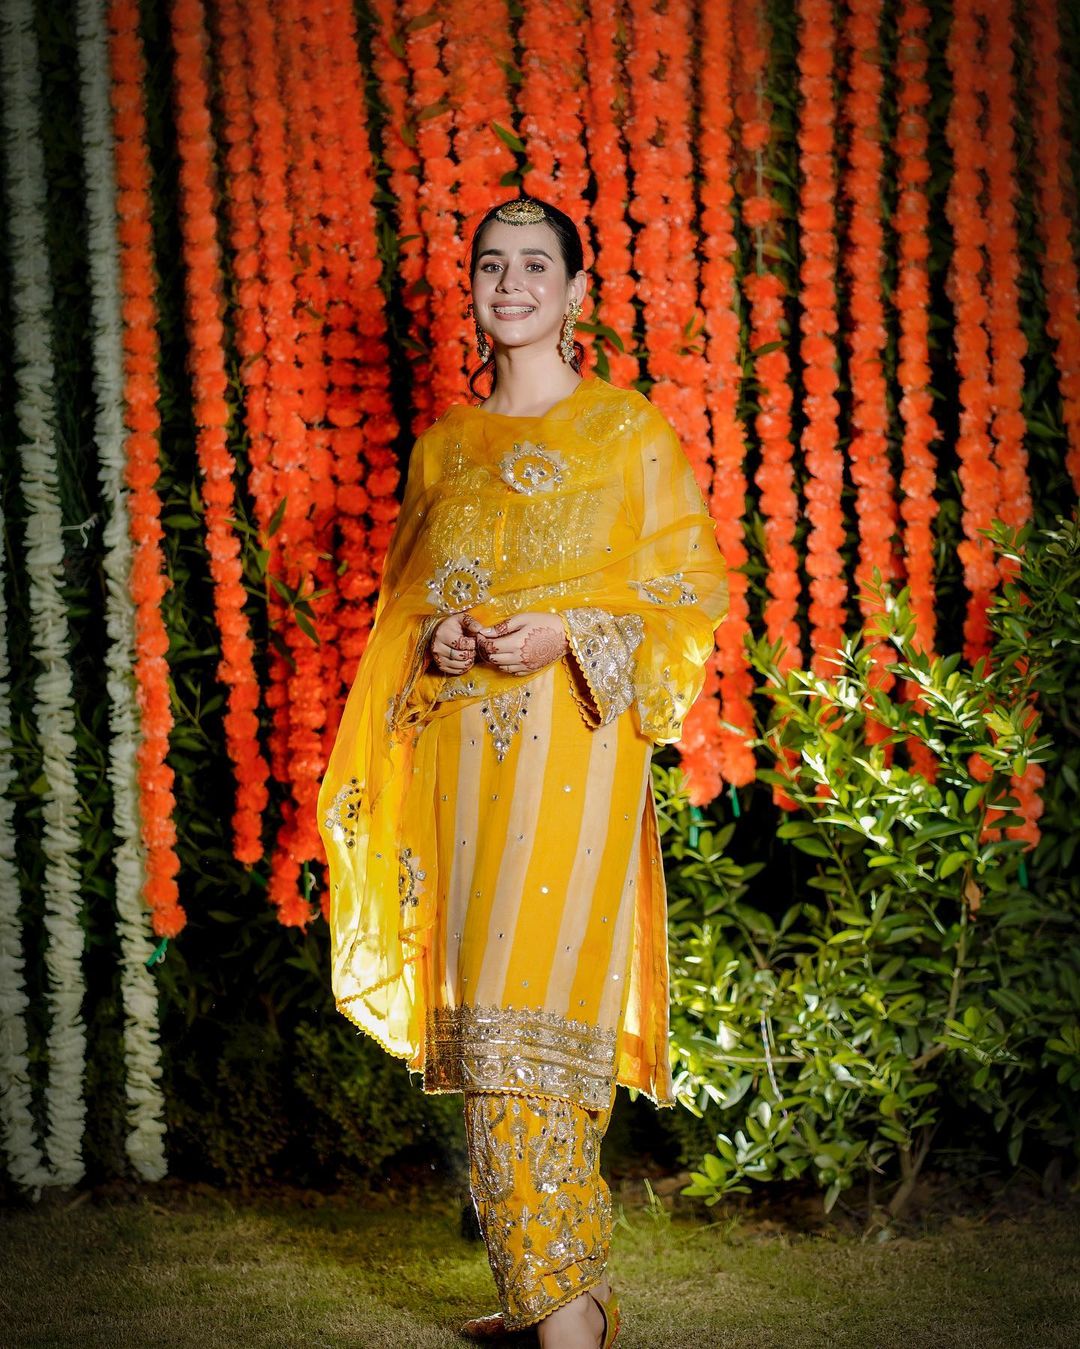 Sunanda Sharma In Yellow Kurta Best For Haldi Outfit Sunanda Sharma Looks And Outfit